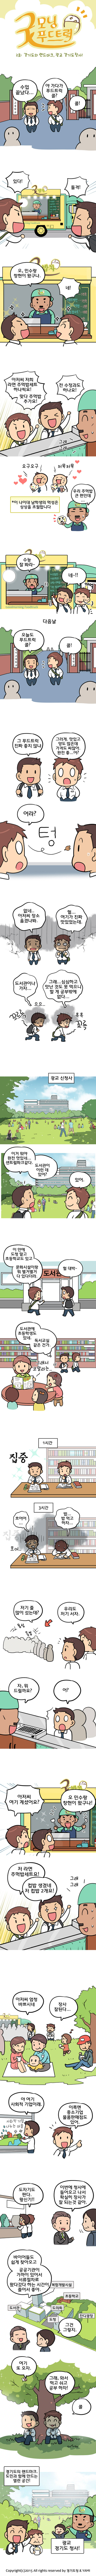 굿모닝 푸드트럭 2화 - 경기도의 랜드마크, 광교 경기도청사